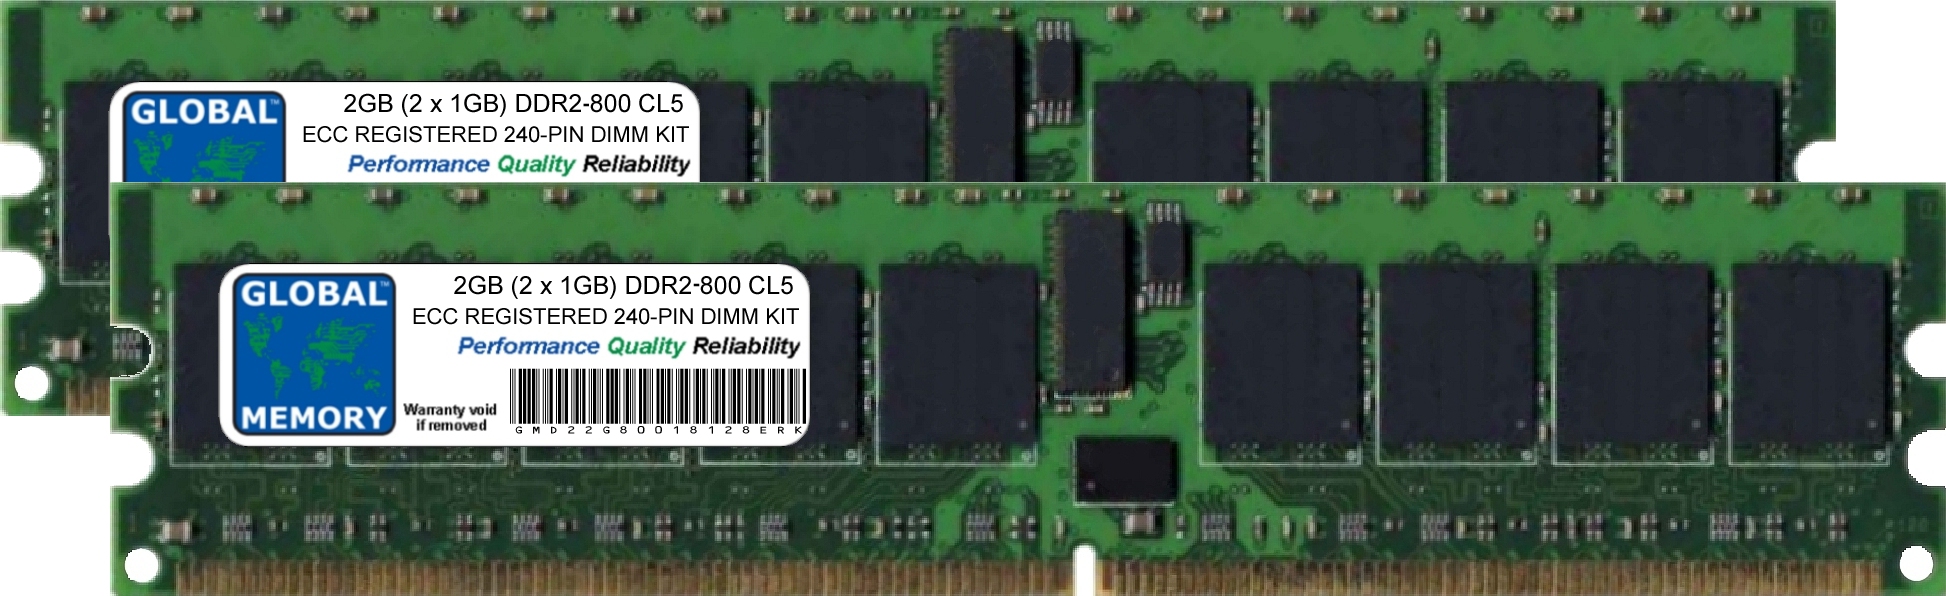 2GB (2 x 1GB) DDR2 800MHz PC2-6400 240-PIN ECC REGISTERED DIMM (RDIMM) MEMORY RAM KIT FOR COMPAQ SERVERS/WORKSTATIONS (2 RANK KIT CHIPKILL)